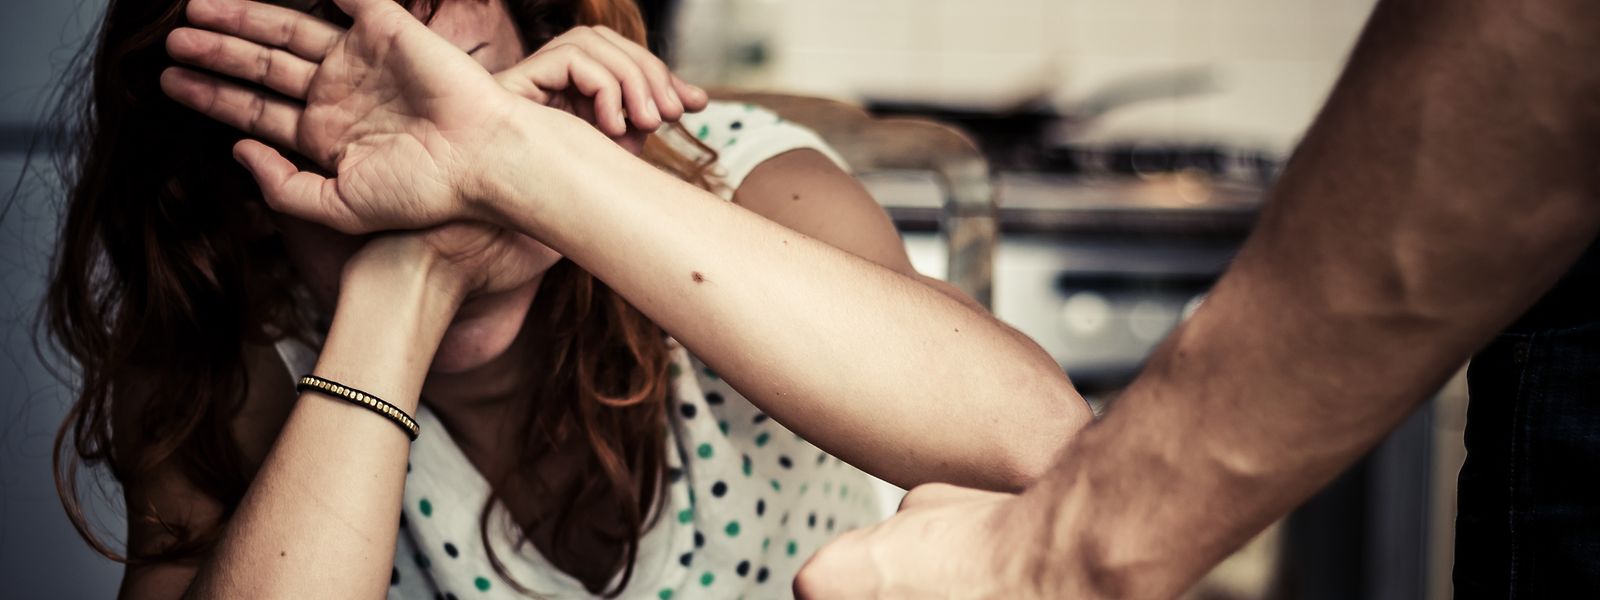 Nur fünf bis zehn Prozent der Fälle von häuslicher Gewalt werden angezeigt. Die Umedo soll helfen, die Lage zu verbessern.